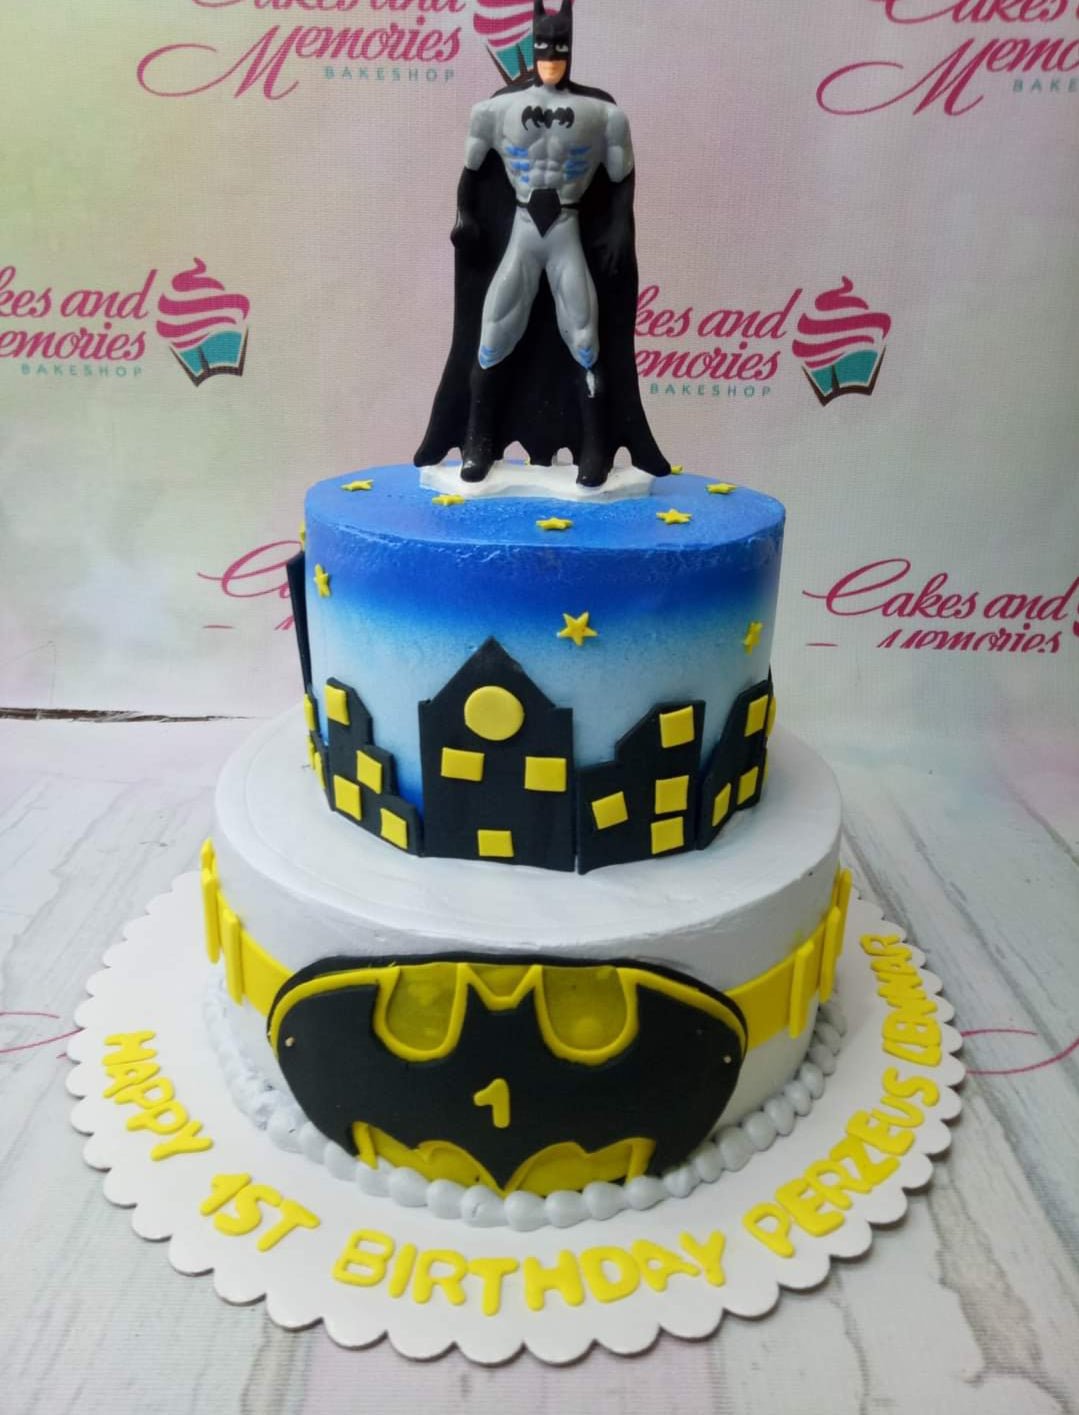 Batman Cake - 2209 – Cakes and Memories Bakeshop